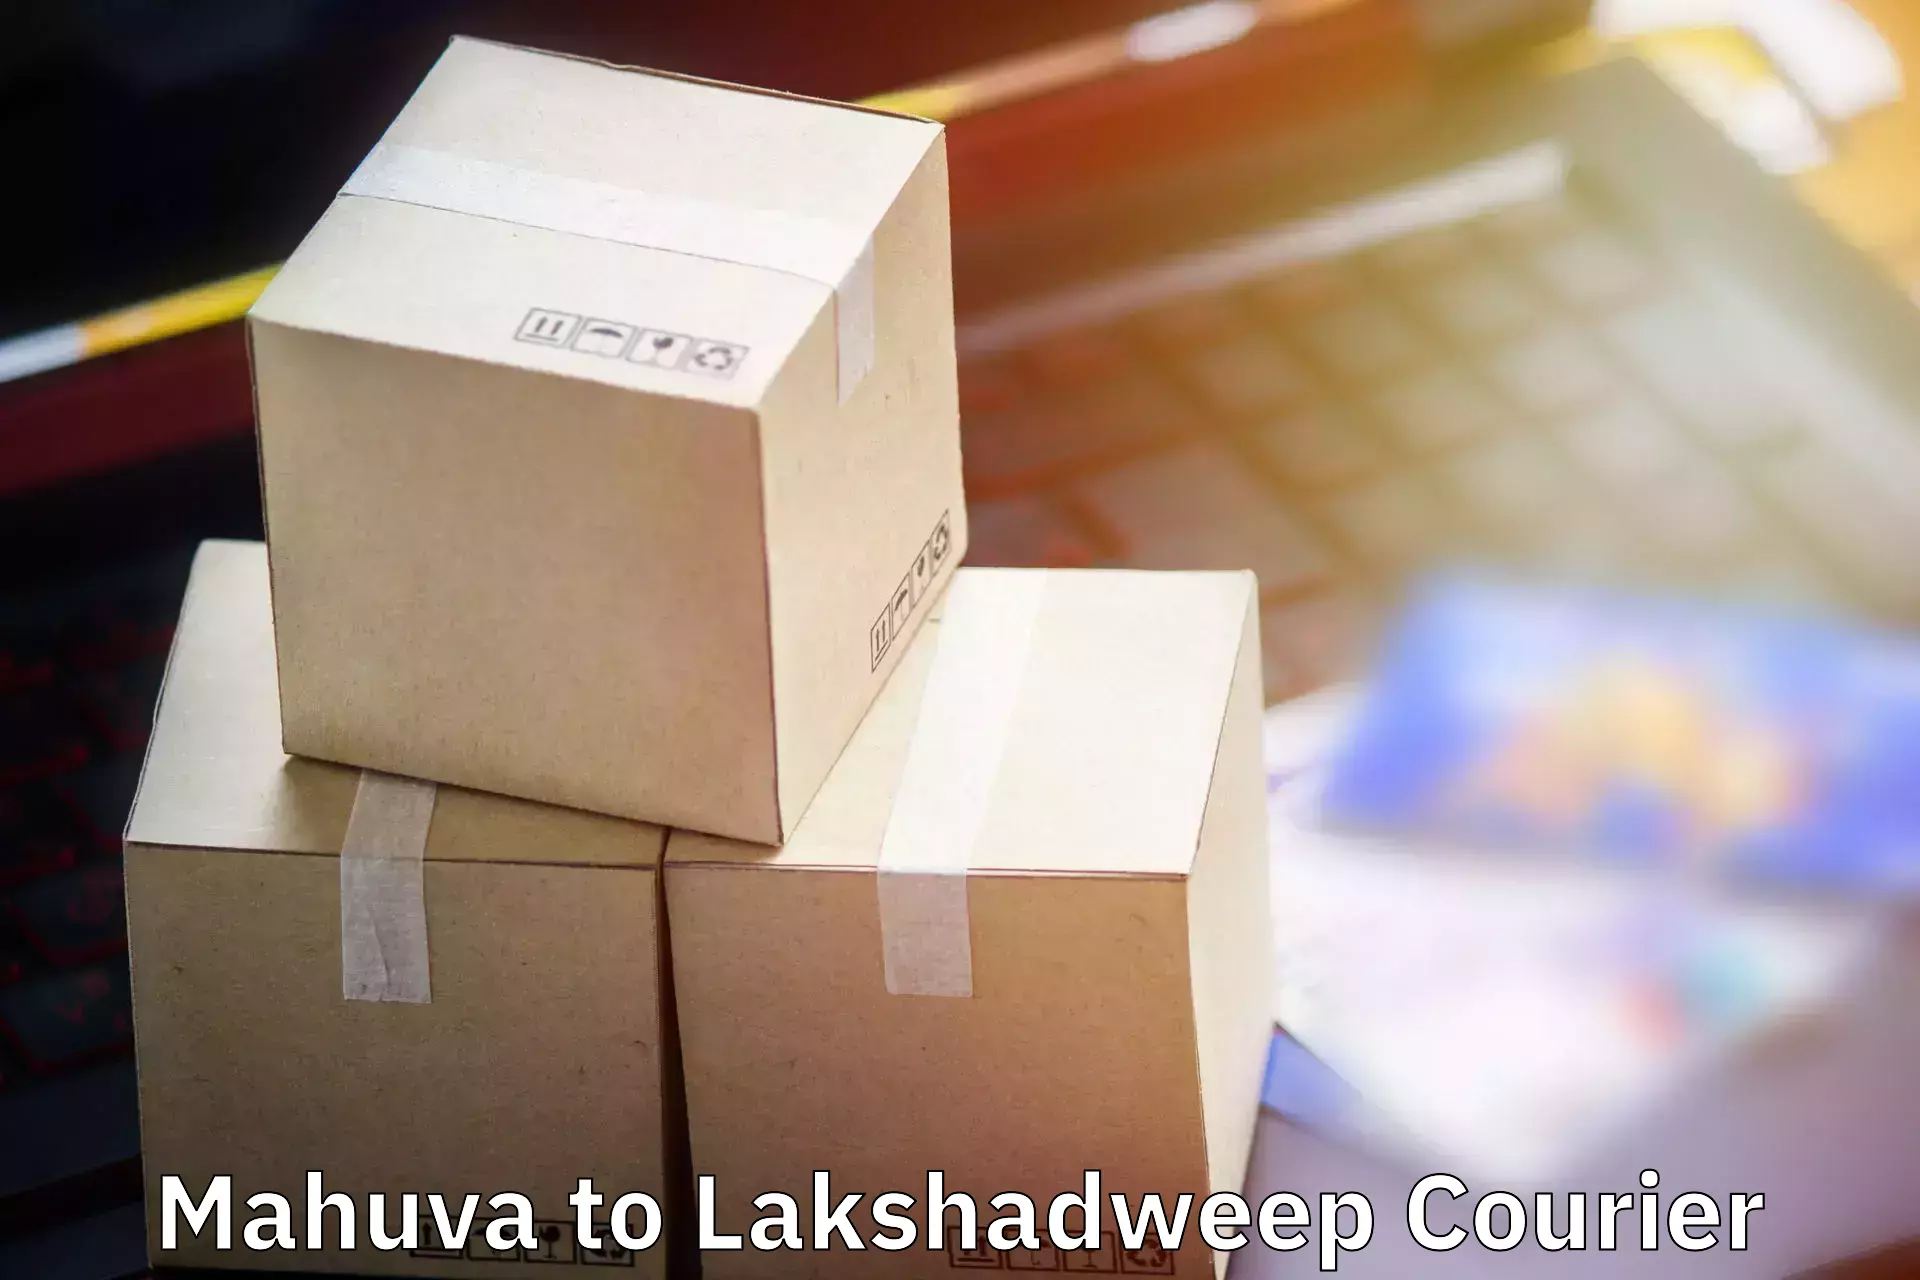 Baggage shipping experience Mahuva to Lakshadweep